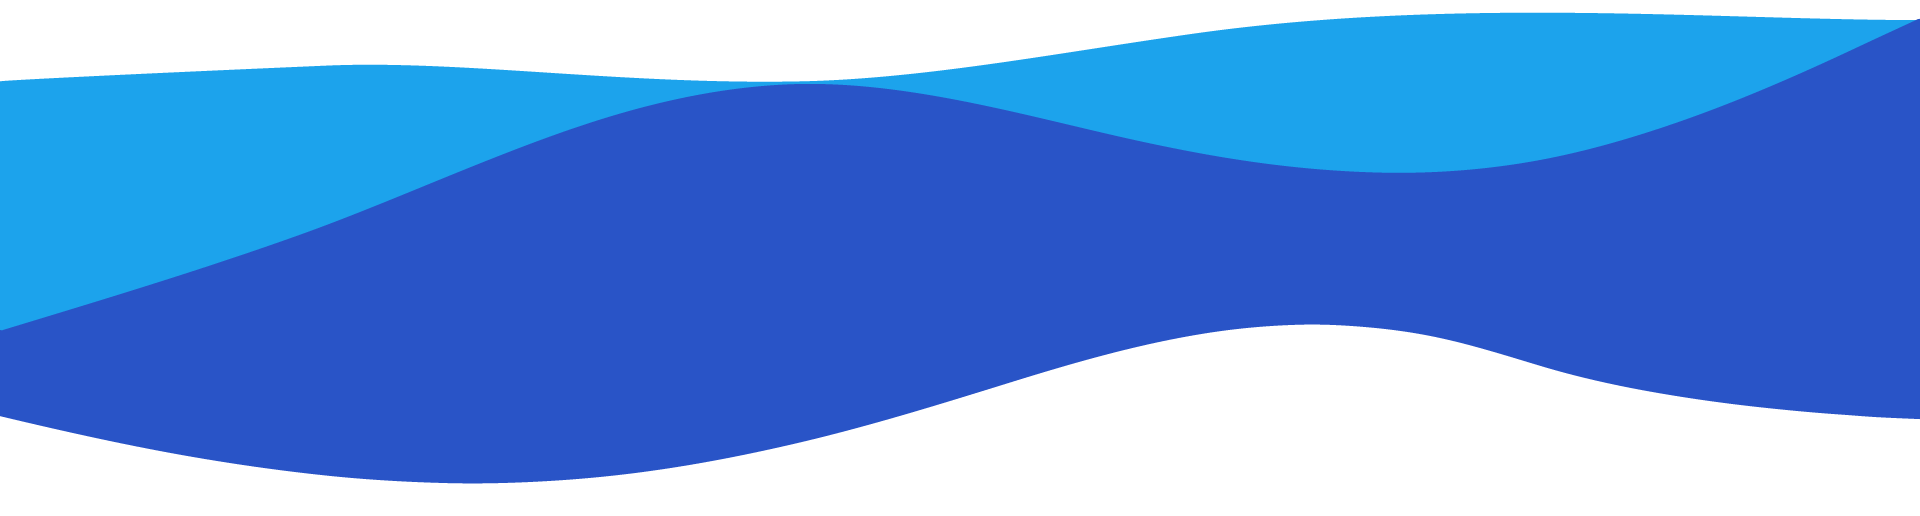 banner-onda-celeste-azul